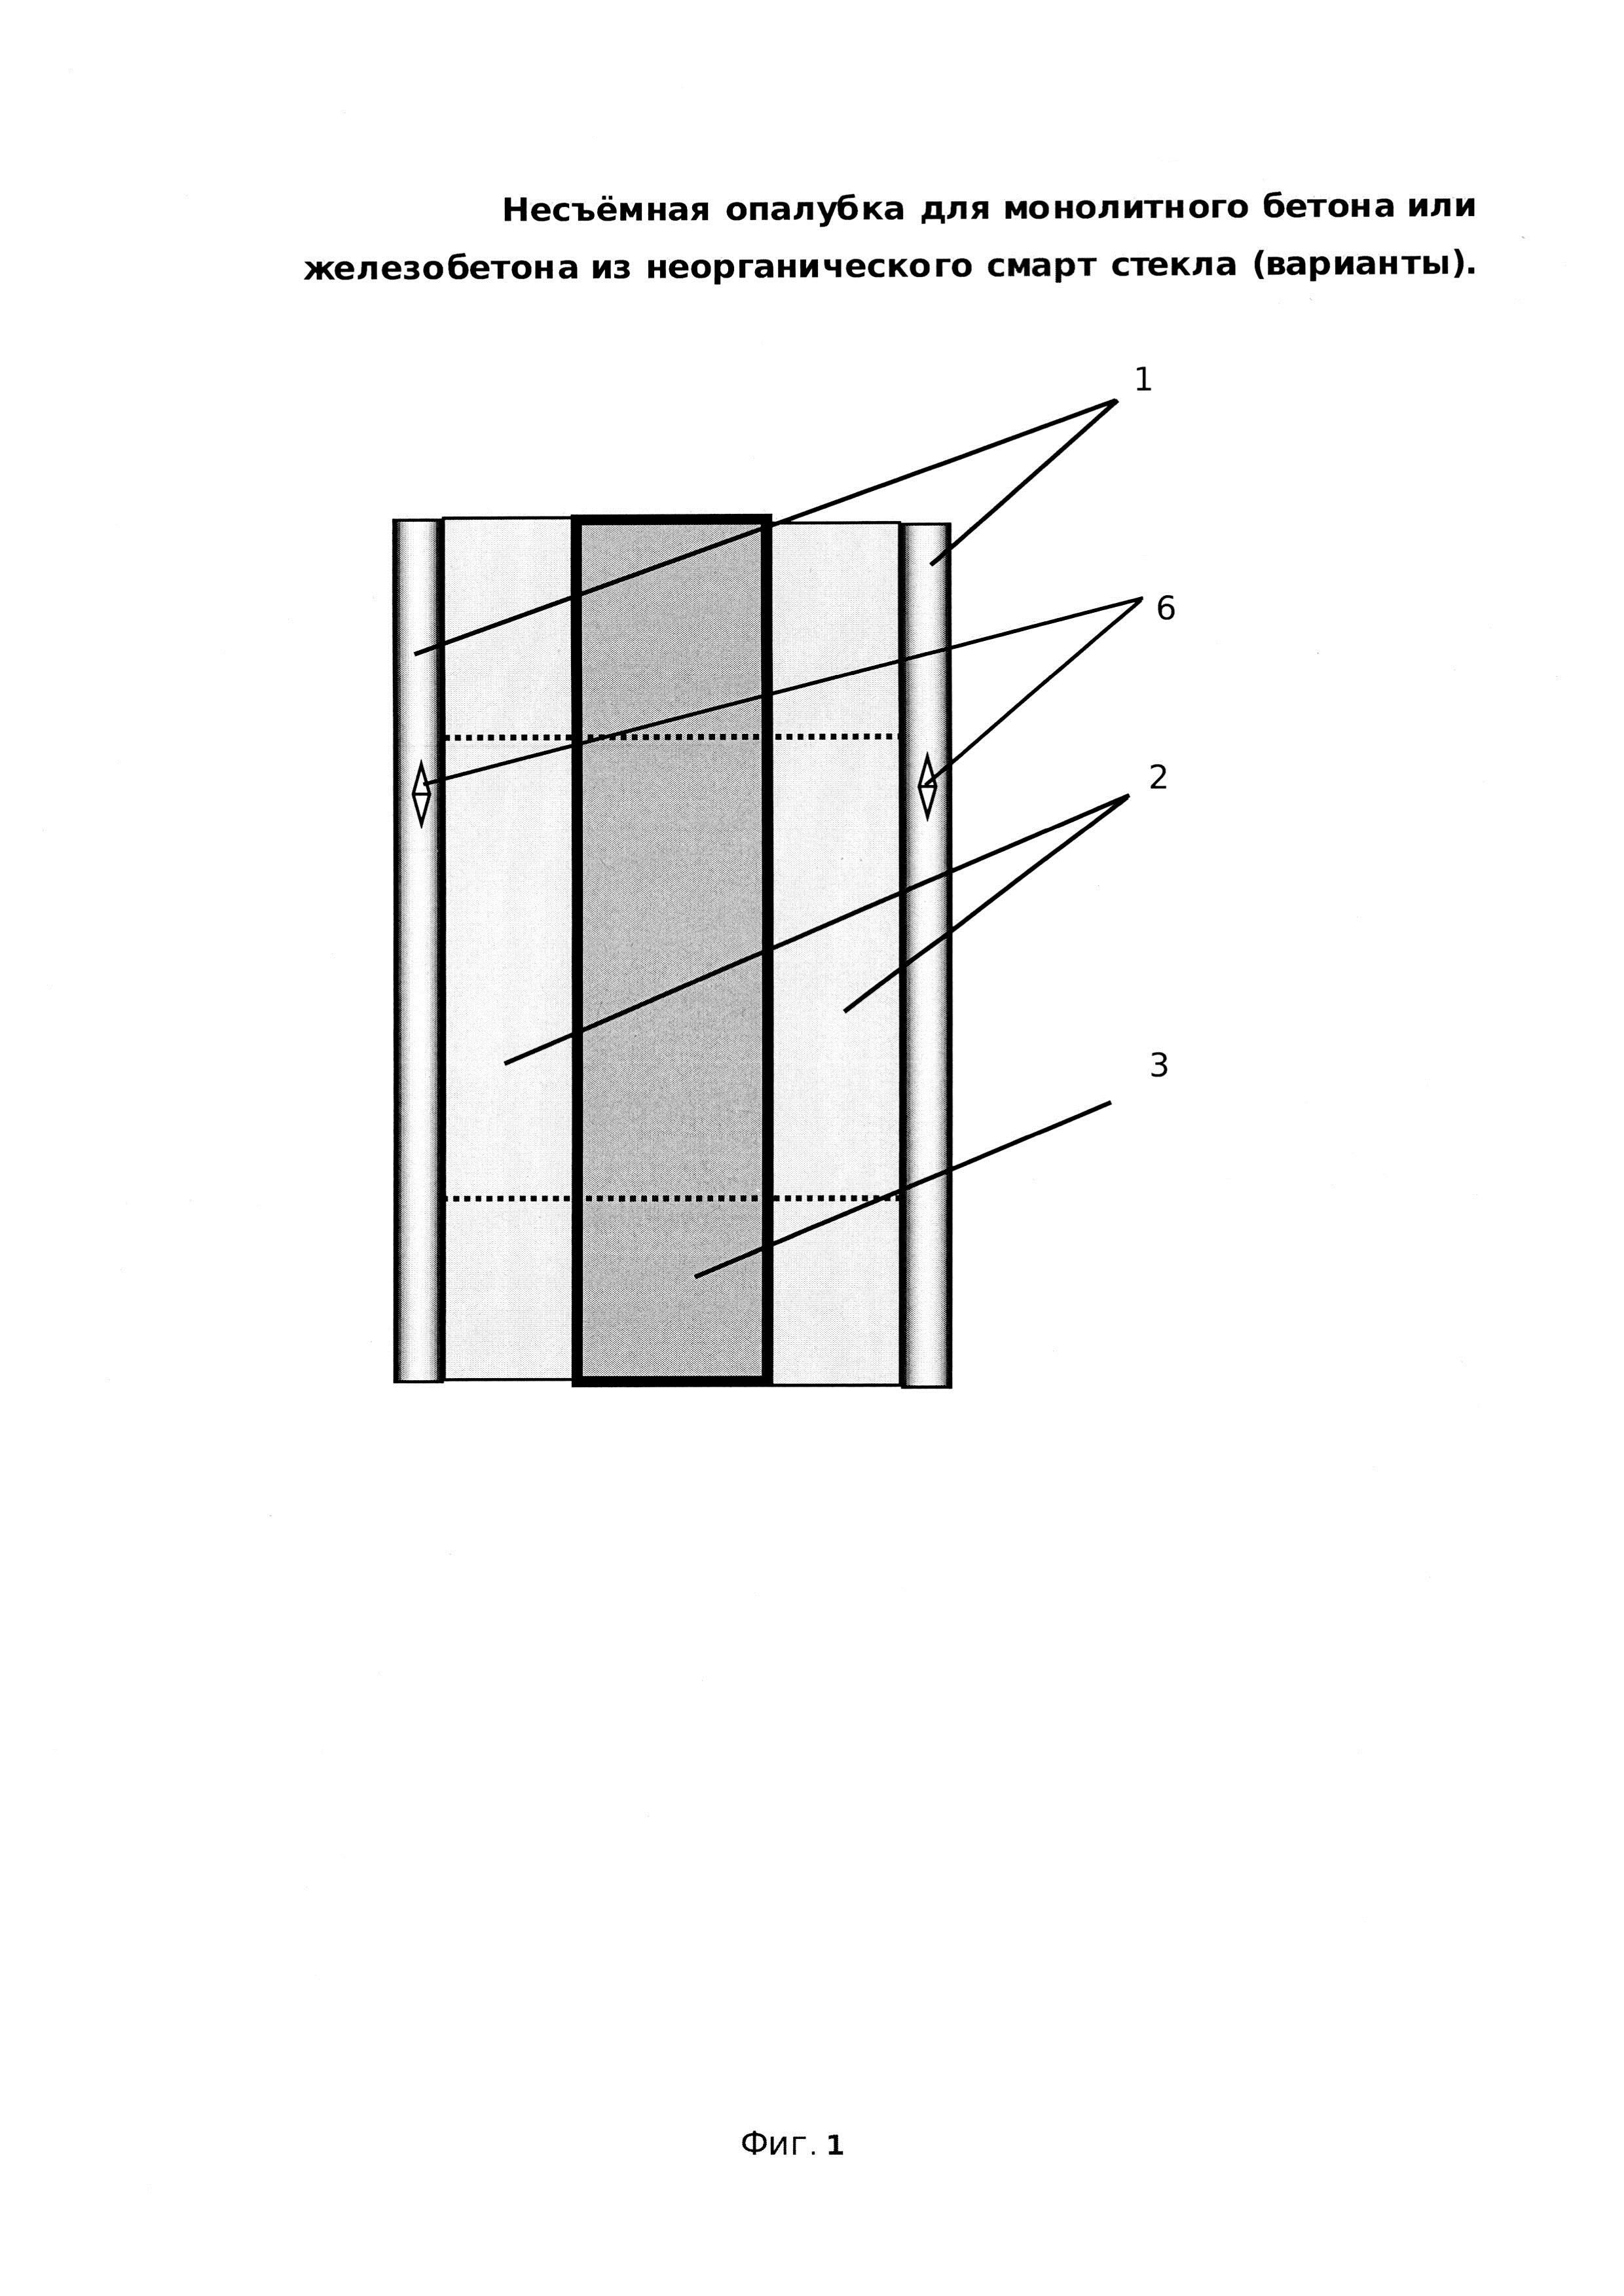 Несъёмная опалубка для монолитного бетона или железобетона из неорганического смарт стекла (варианты)